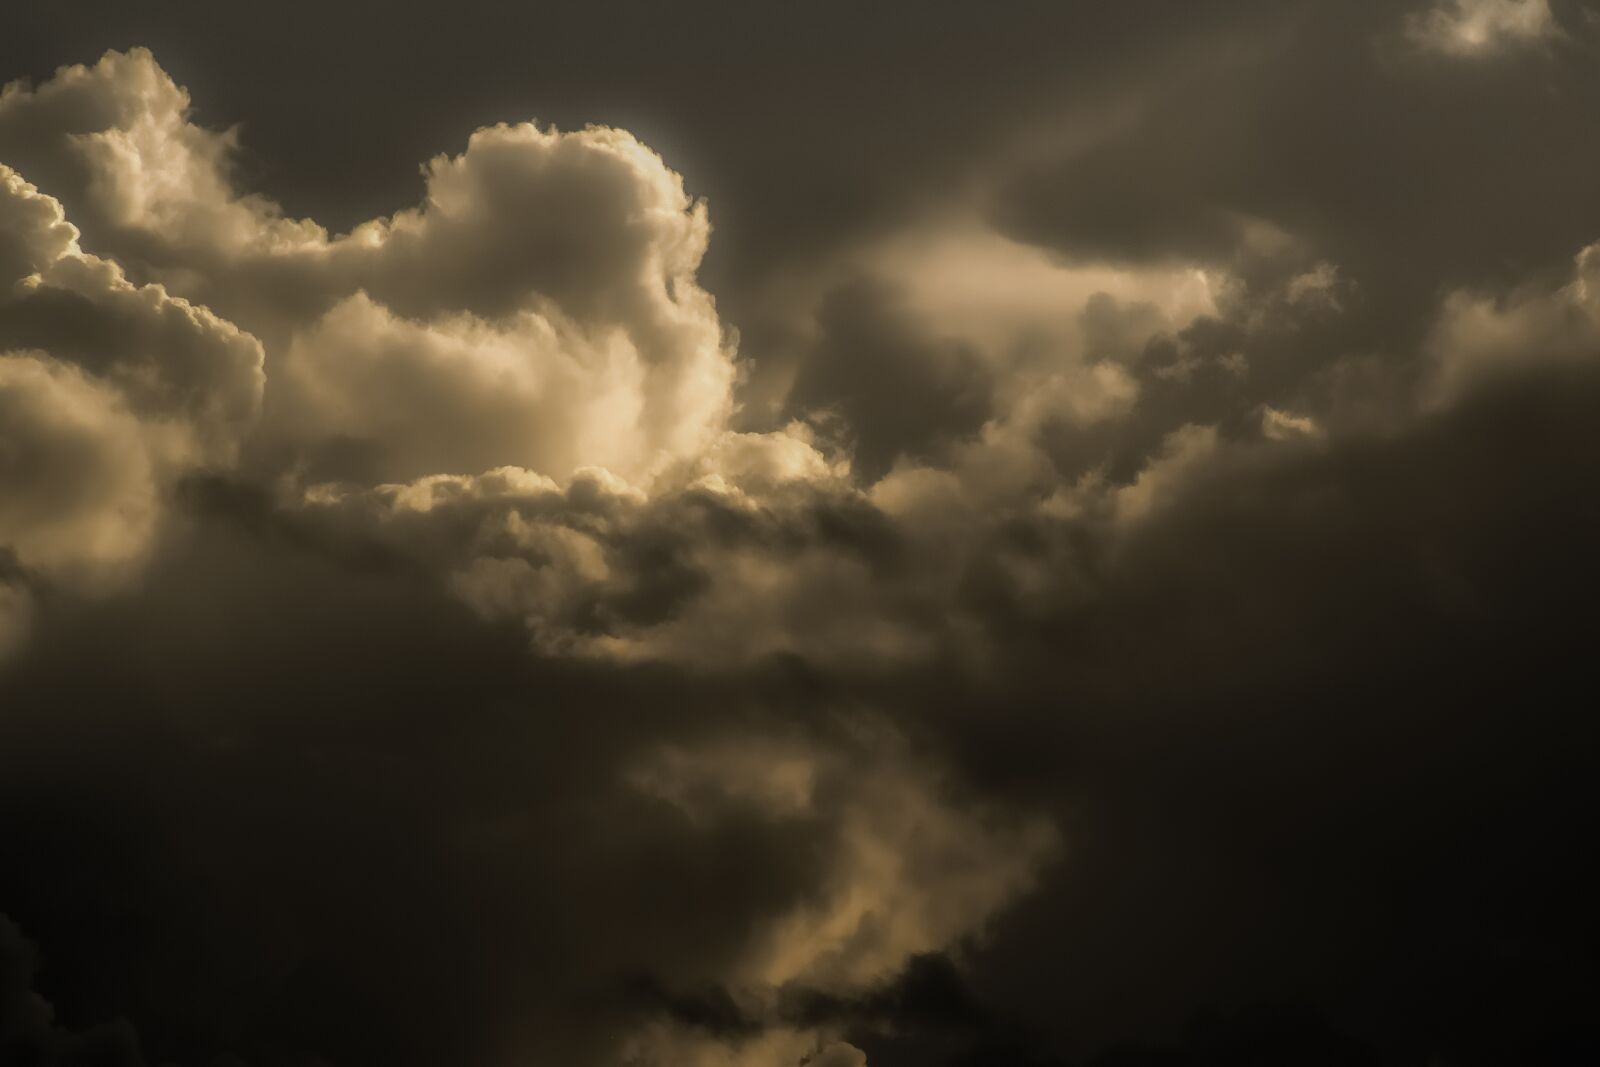 Nikon D3300 sample photo. Clouds, storm, sky photography